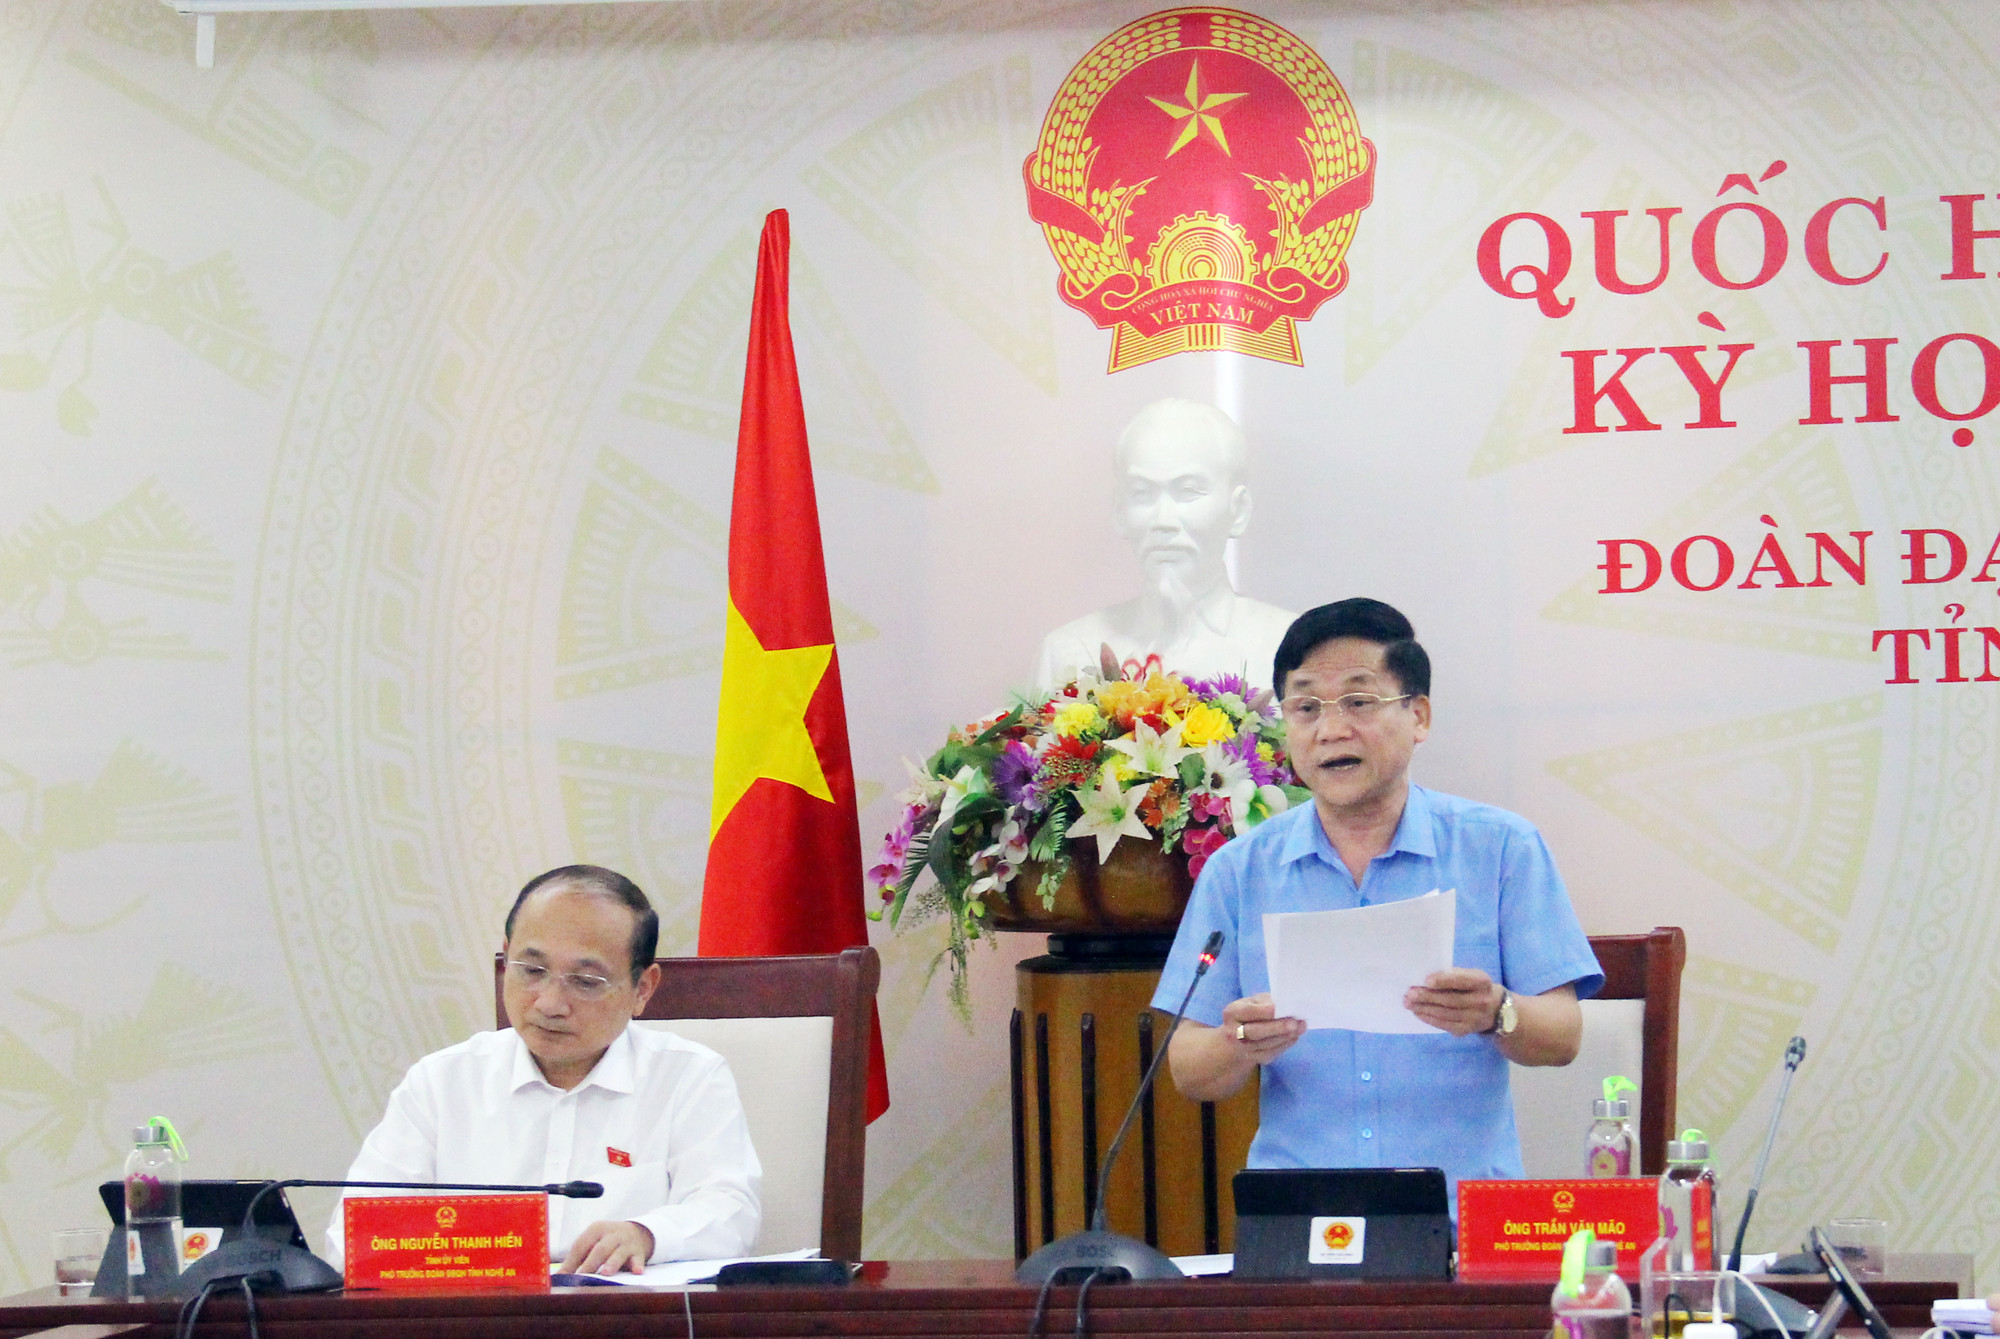 Đồng chí Trần Văn Mão - Phó Trưởng Đoàn đại biểu Quốc hội tỉnh trình bày kiến nghị góp ý tại điểm cầu Nghệ An. Ảnh: Thanh Quỳnh